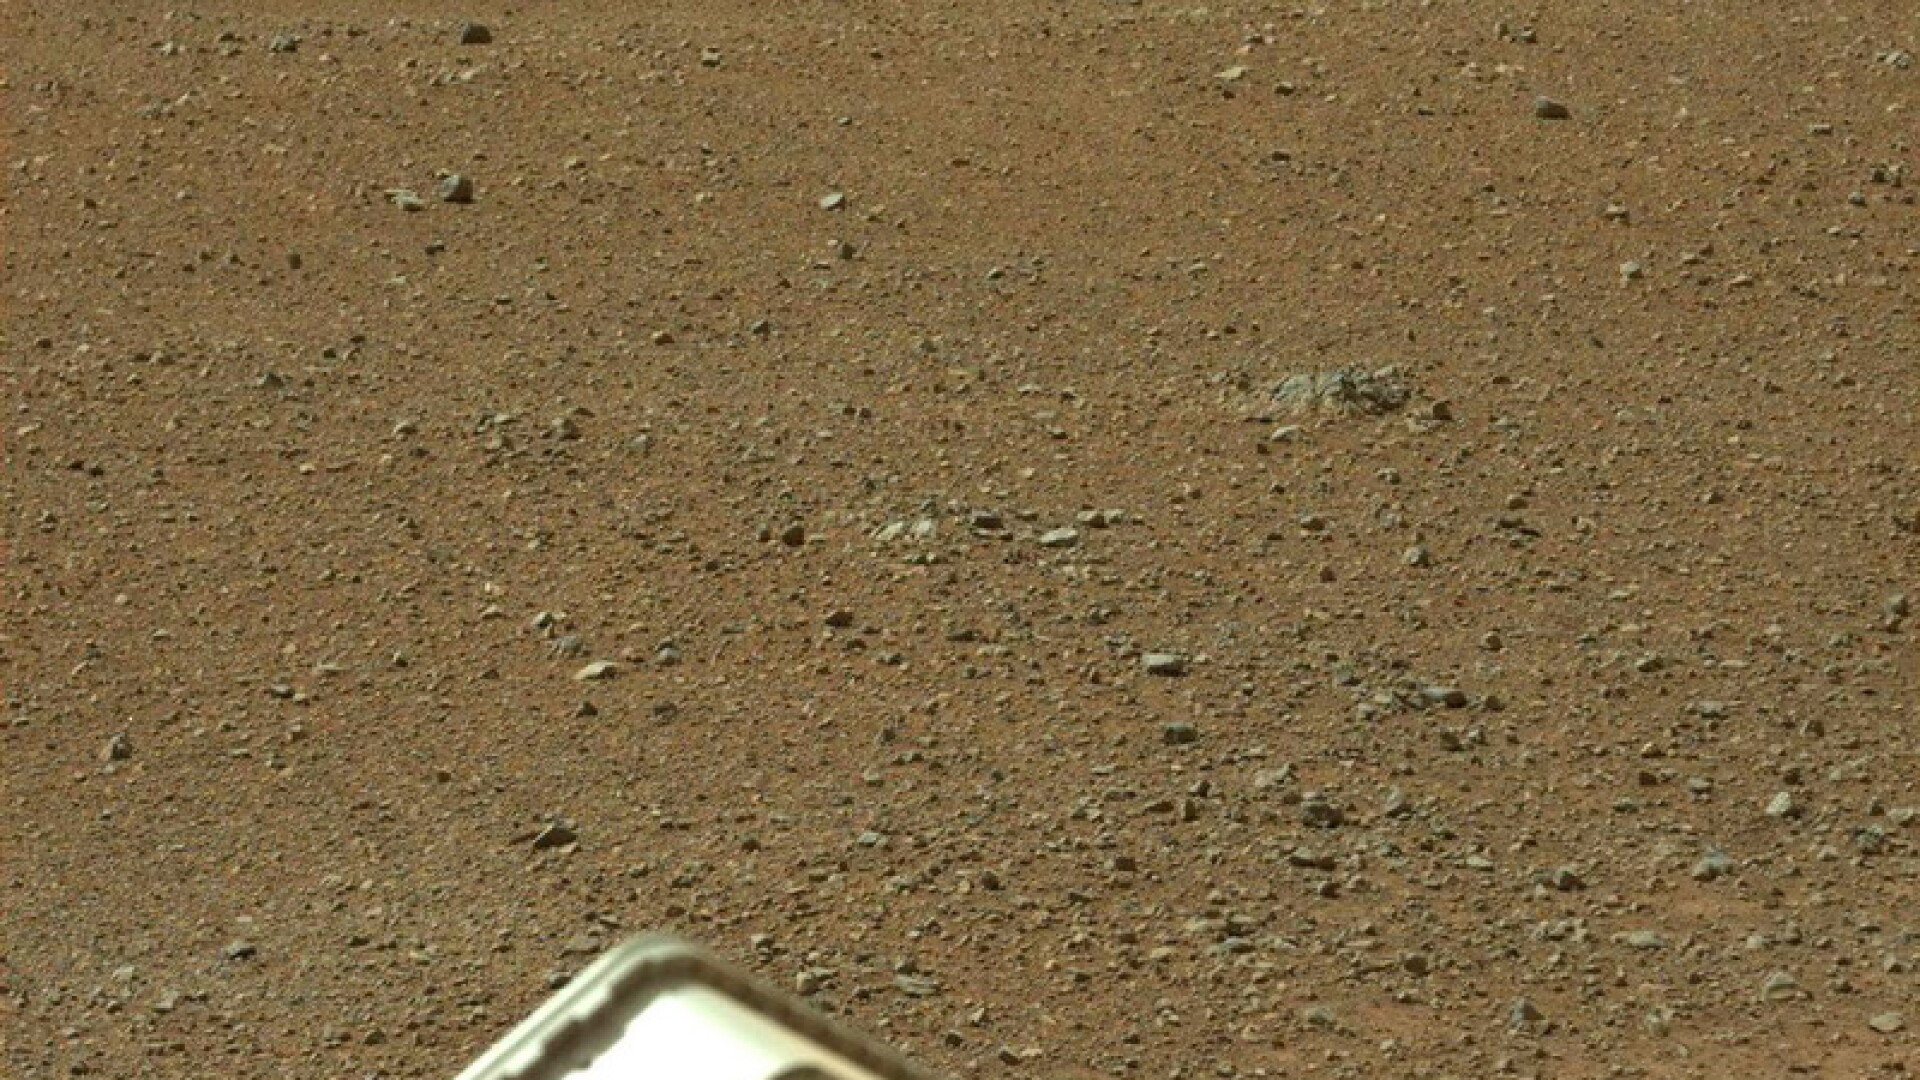 imagini Marte, Curiosity